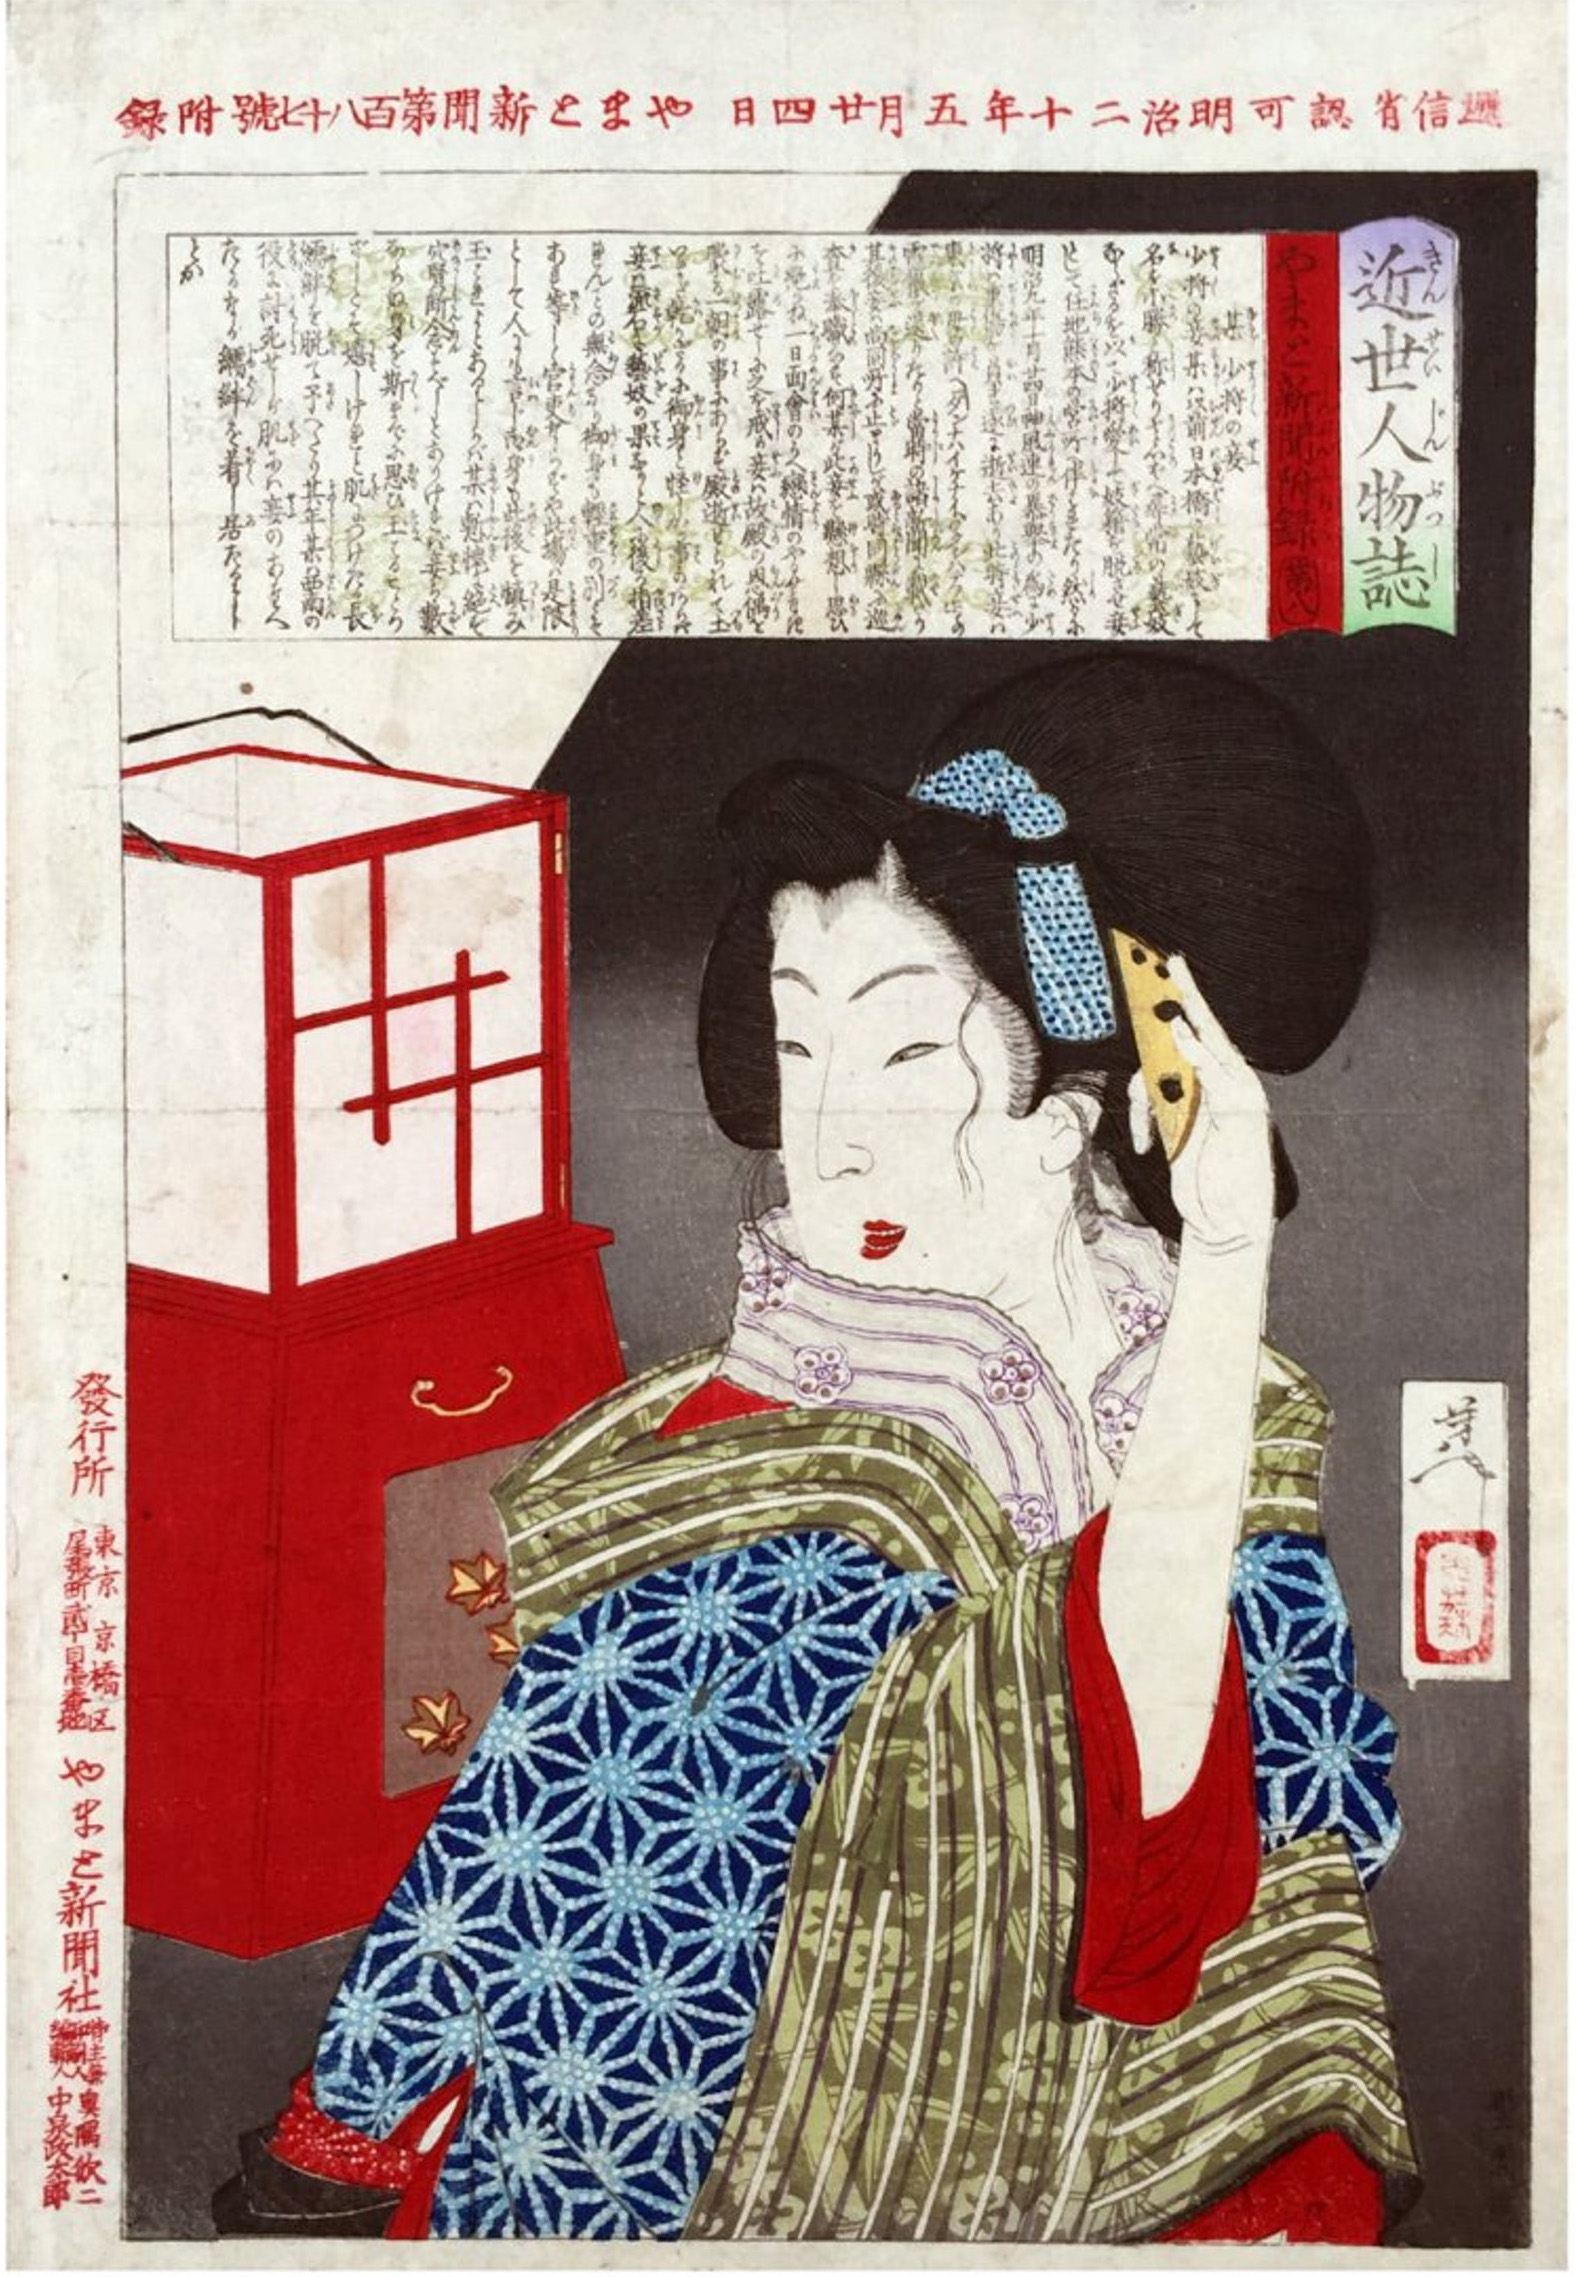 Okatsu of the Obana Clan by Tsukioka Yoshitoshi